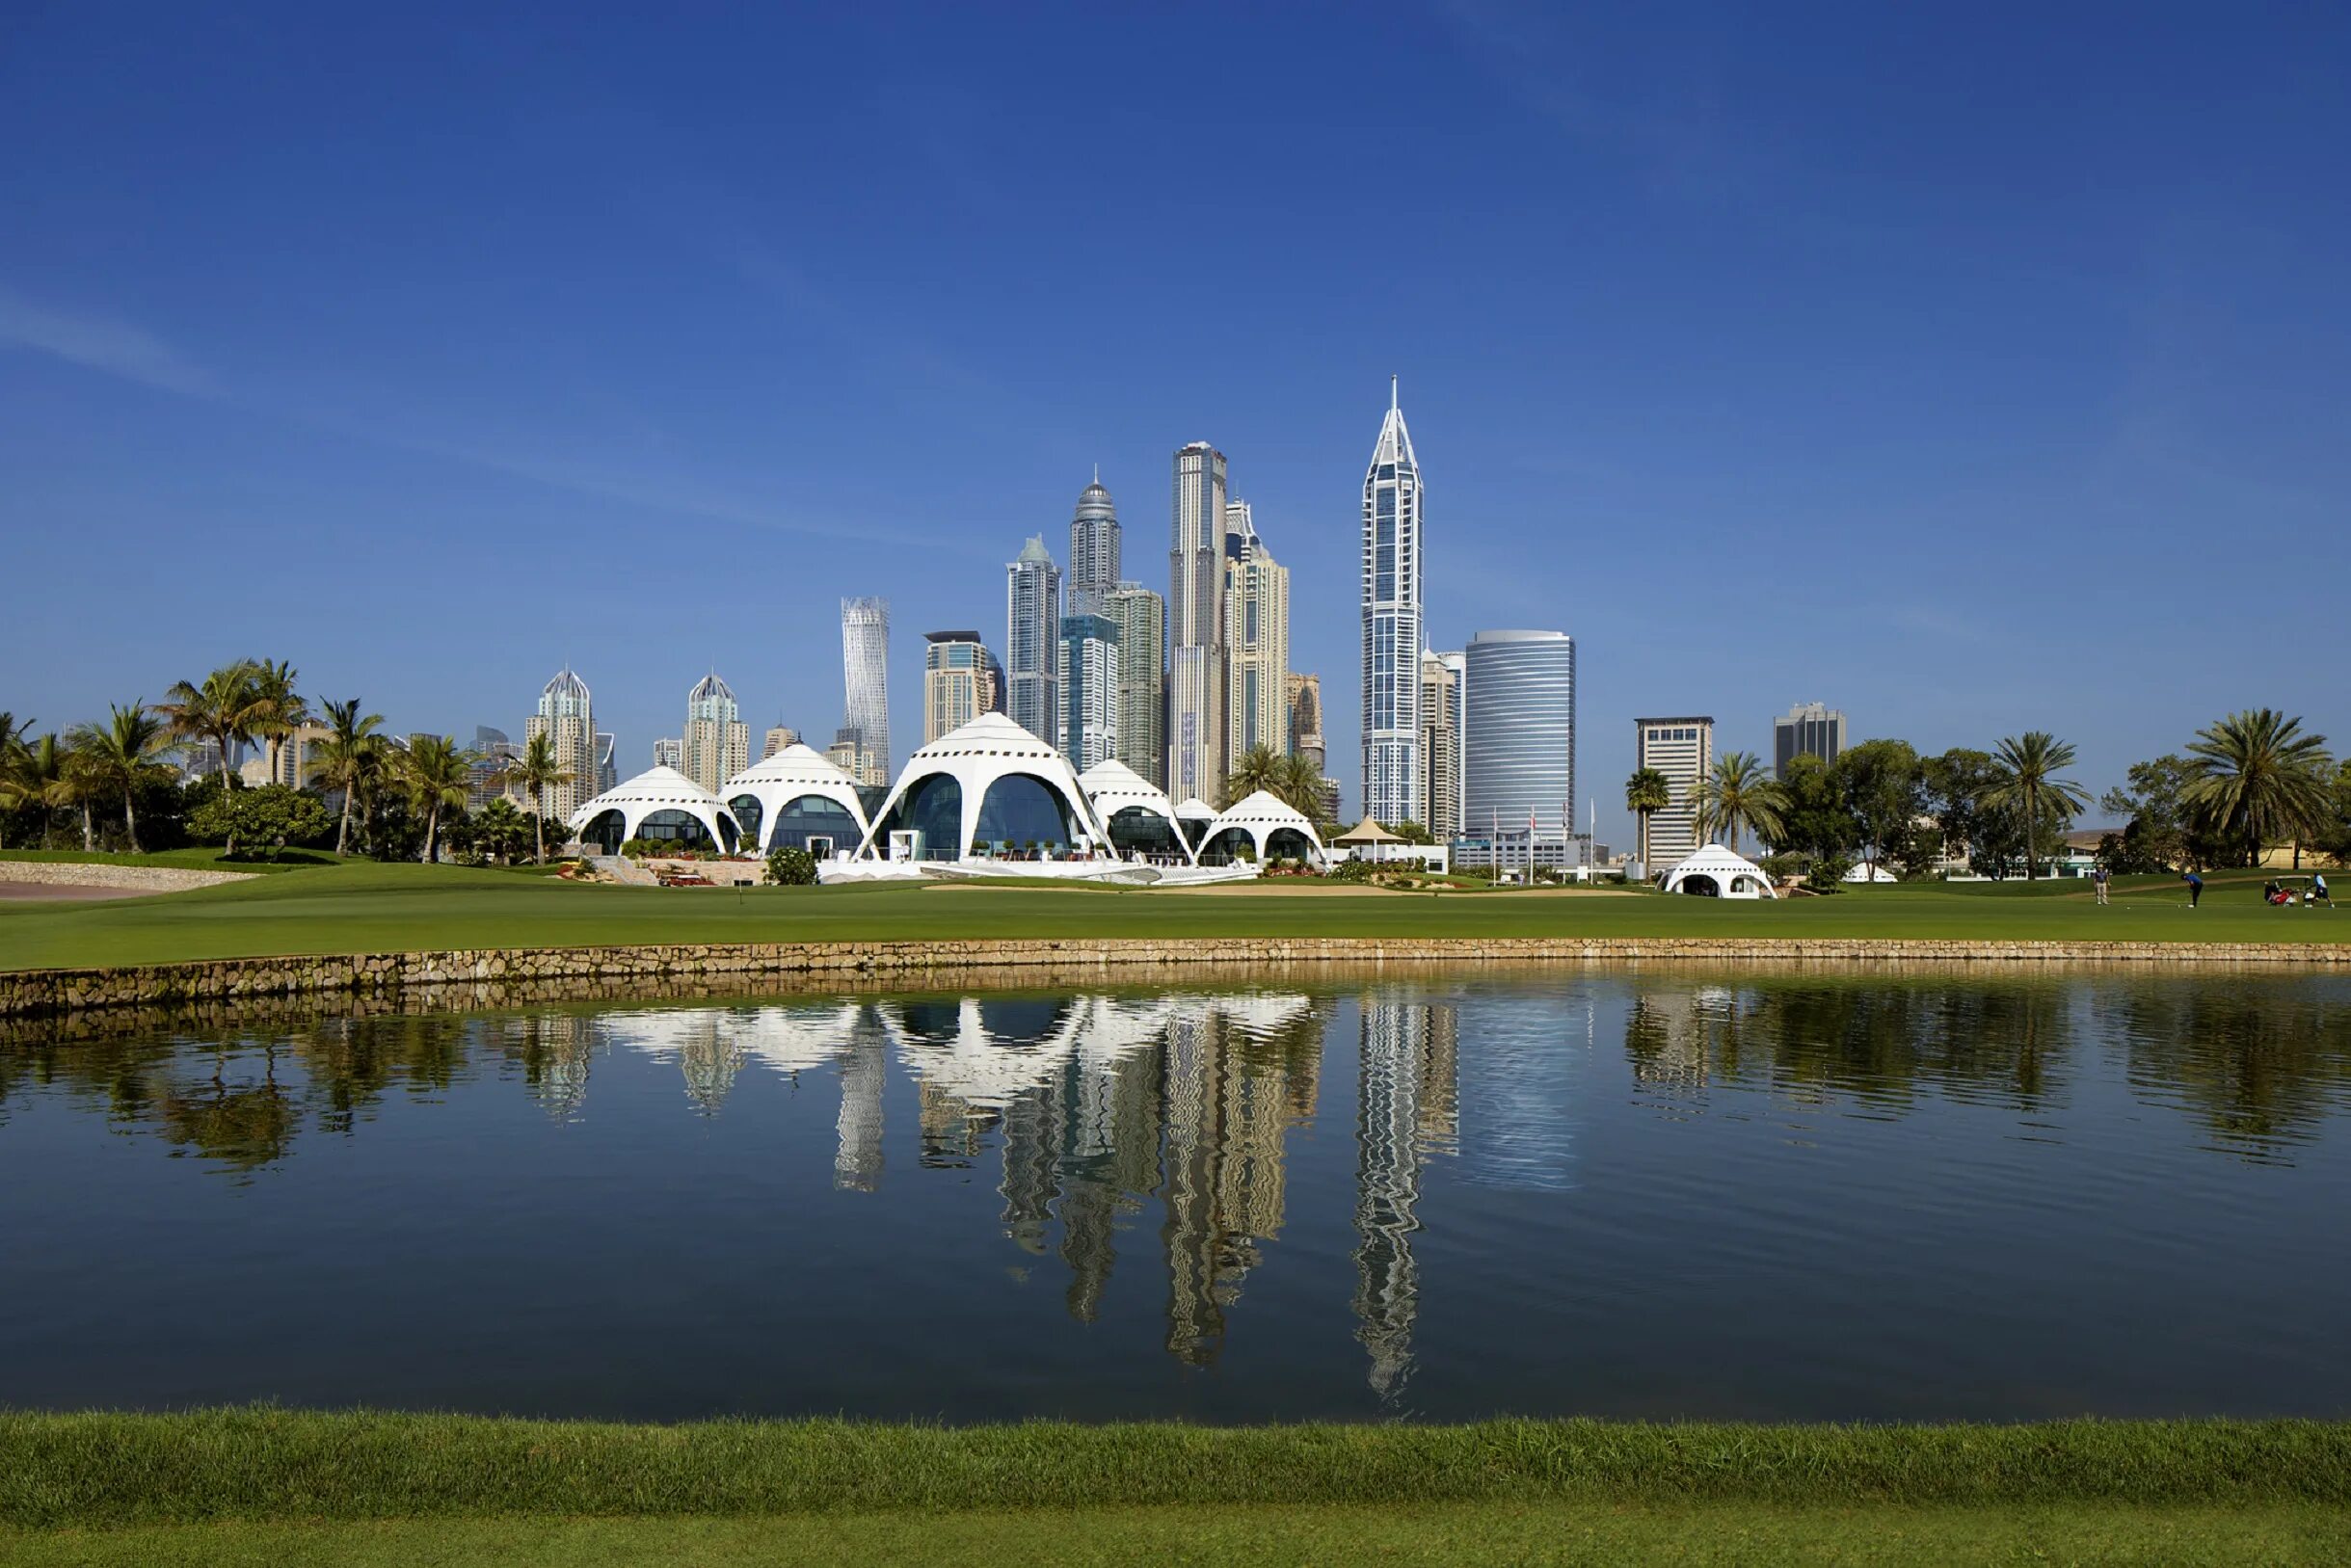 Центр арабских эмиратов. Объединённые арабские эмираты. Majlis course, Дубай. Эмиратес гольф. Emirates Hills Dubai.